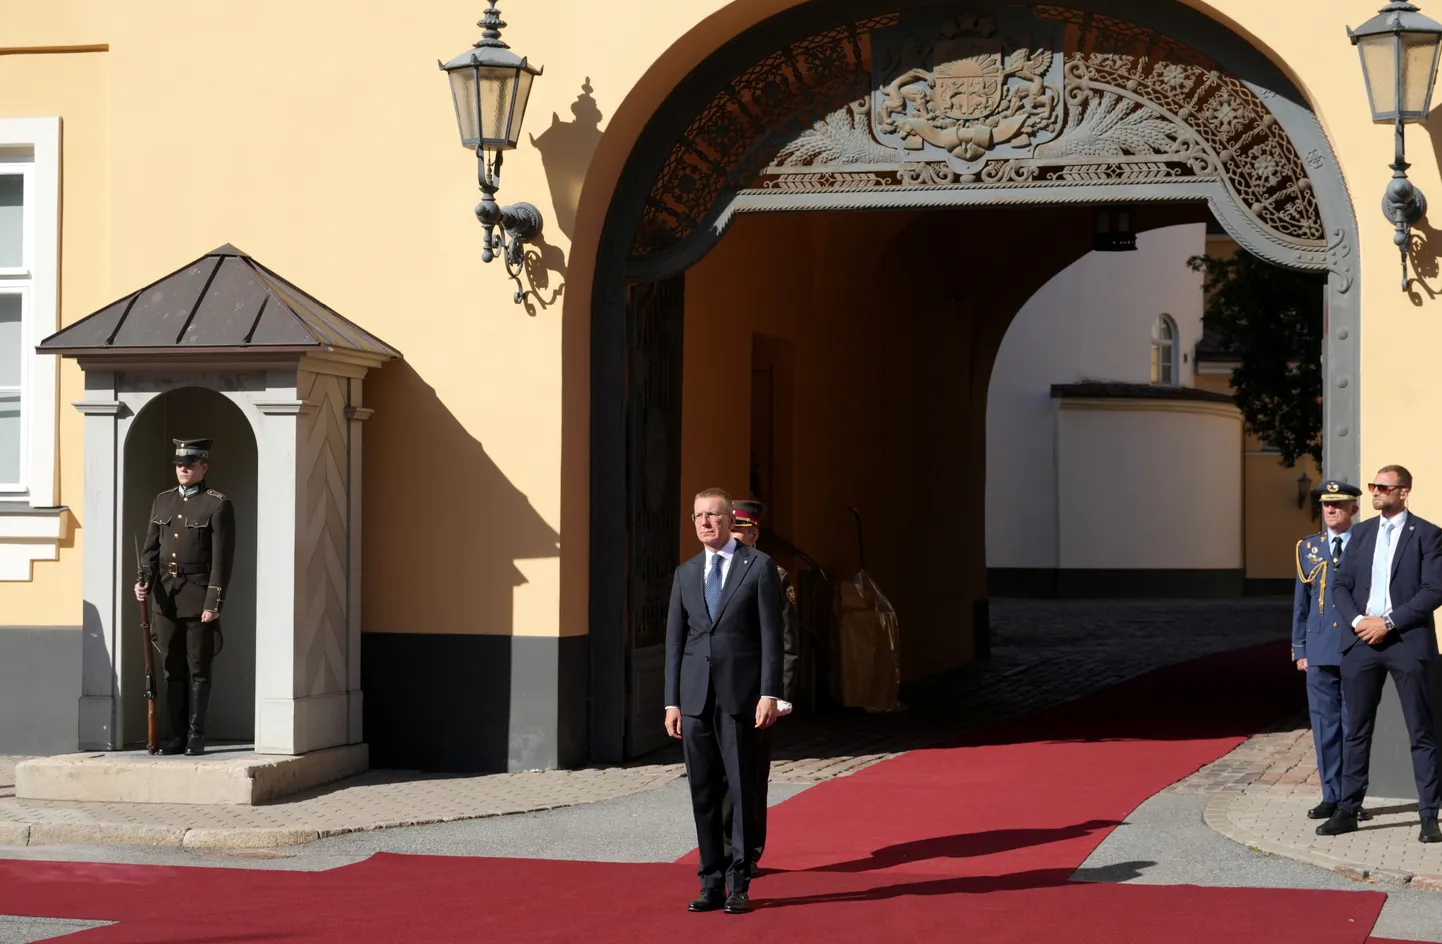 Valsts prezidents Edgars Rinkēvičs (centrā) piedalās Viņa Majestātes Spānijas karaļa svinīgajā sagaidīšanas ceremonijā pie Rīgas pils.